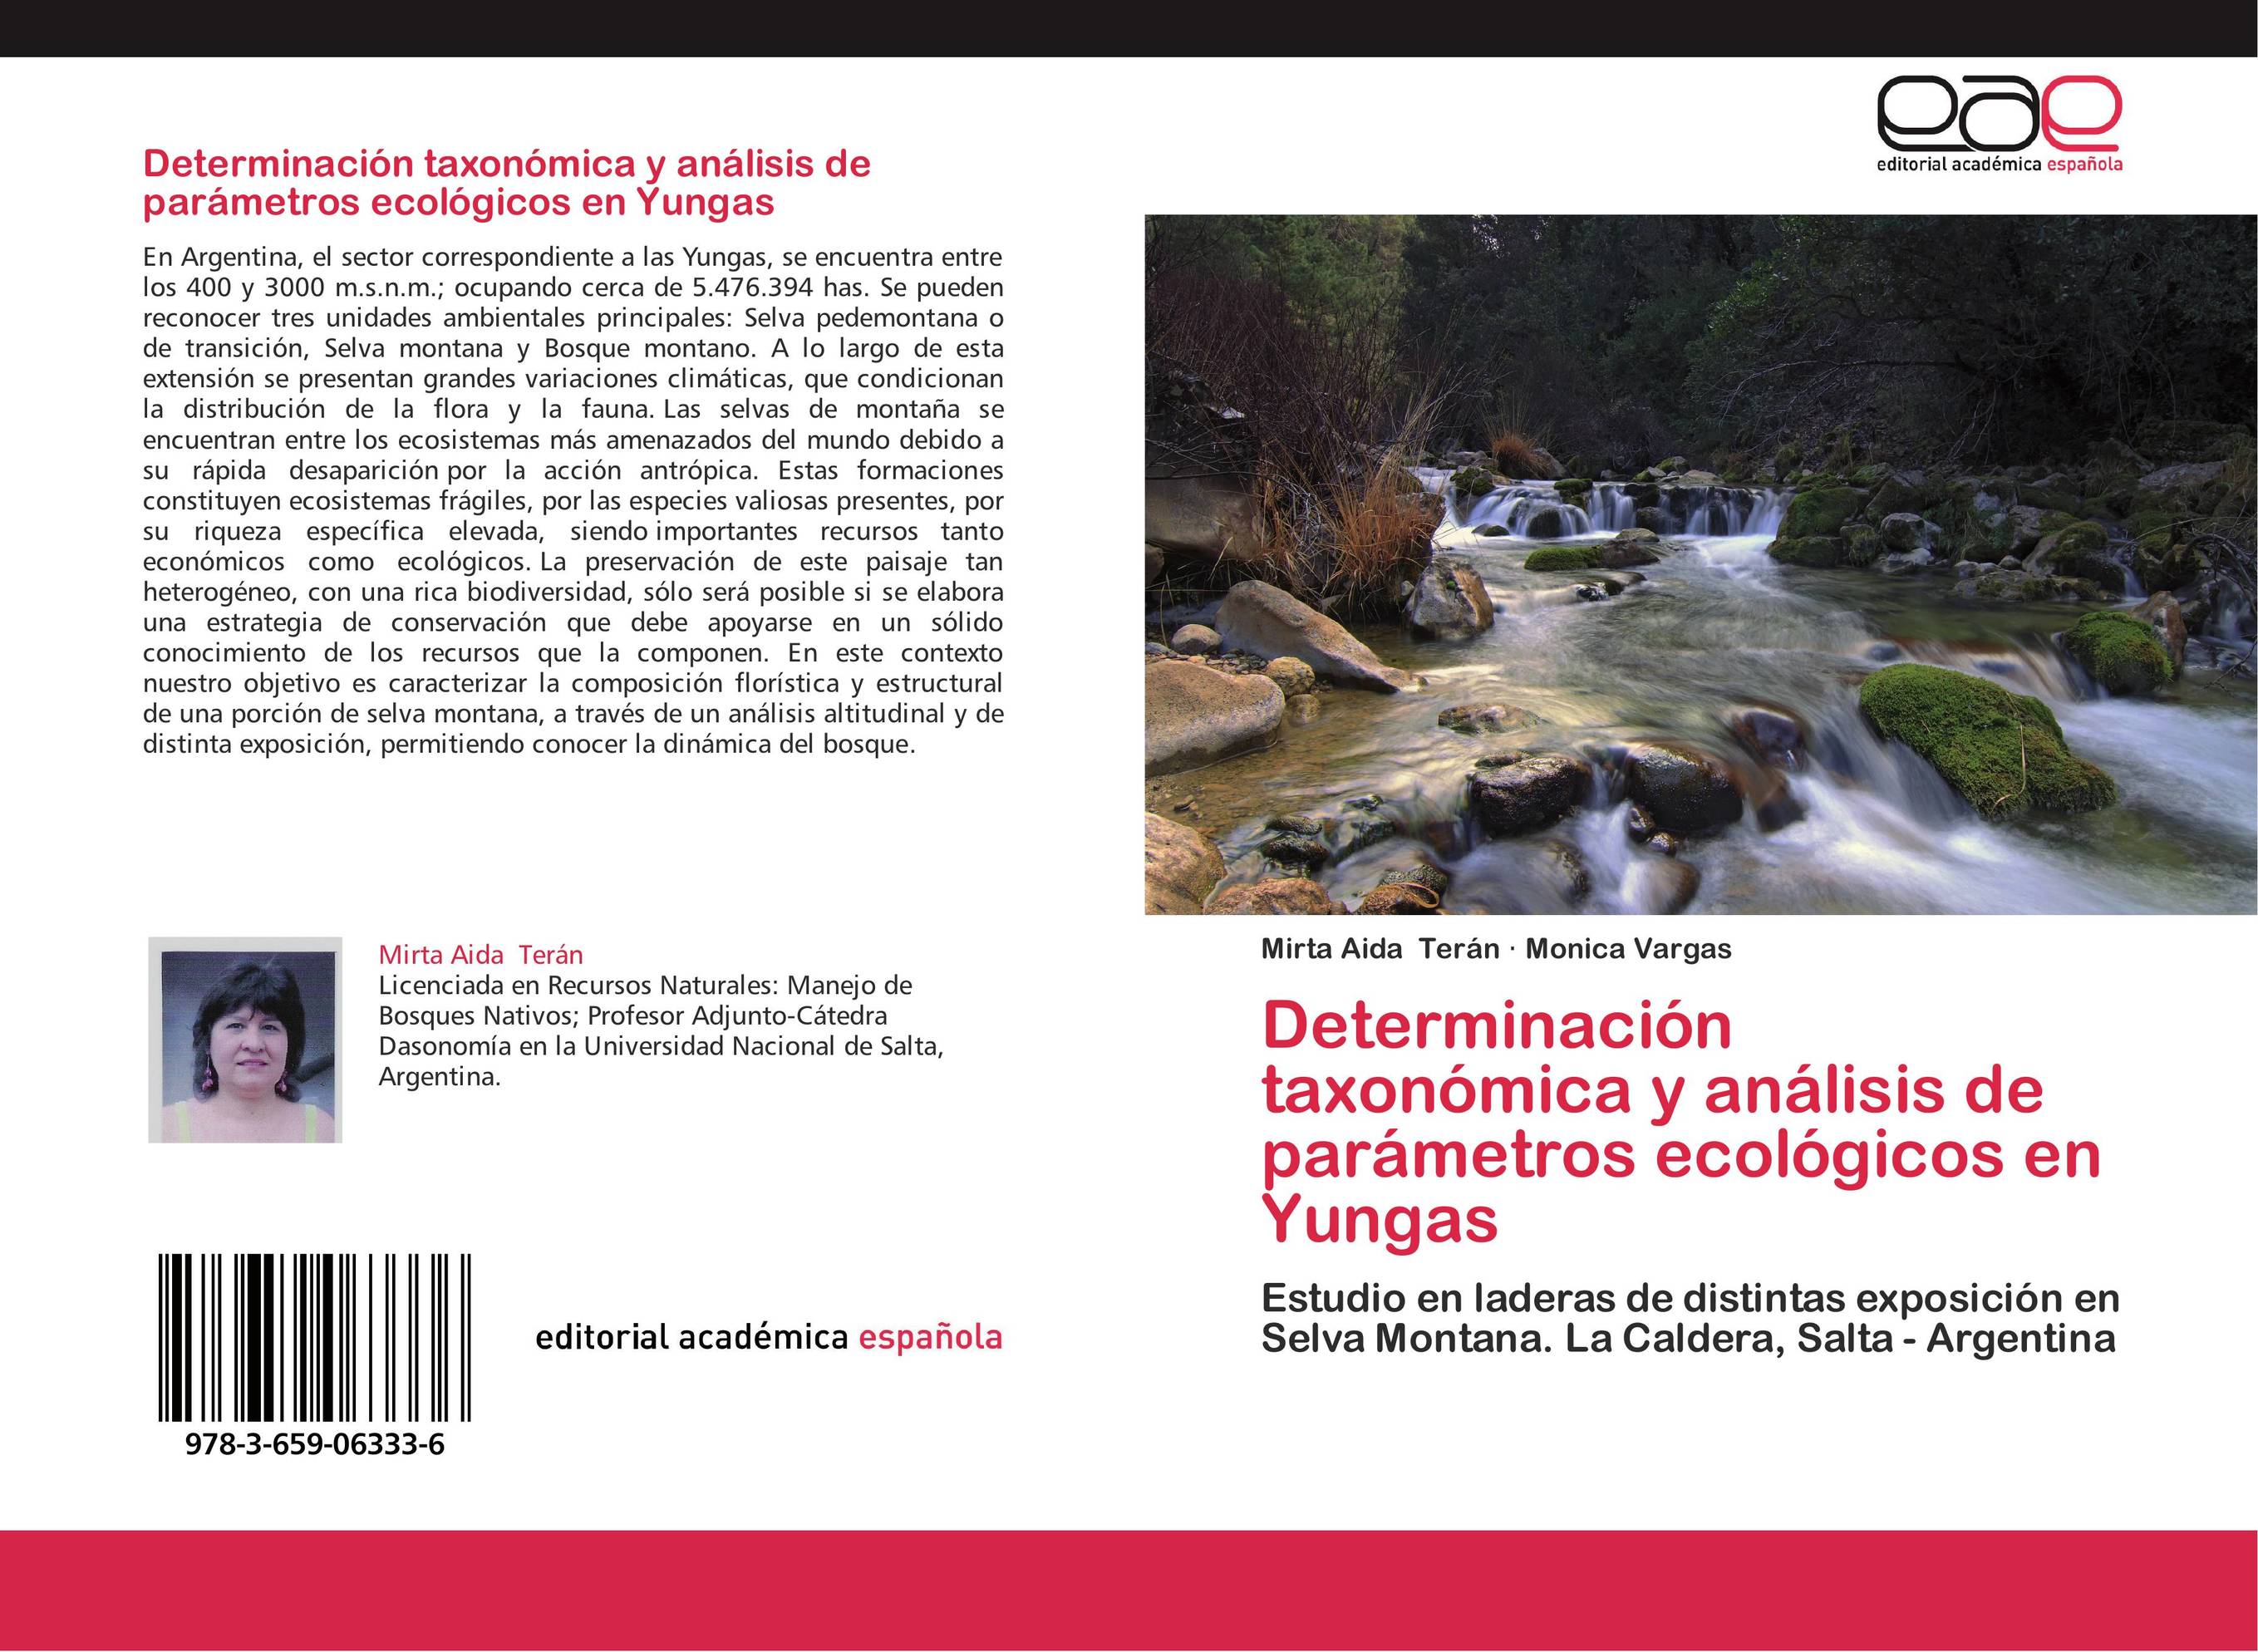 Determinación taxonómica y análisis de parámetros ecológicos en Yungas